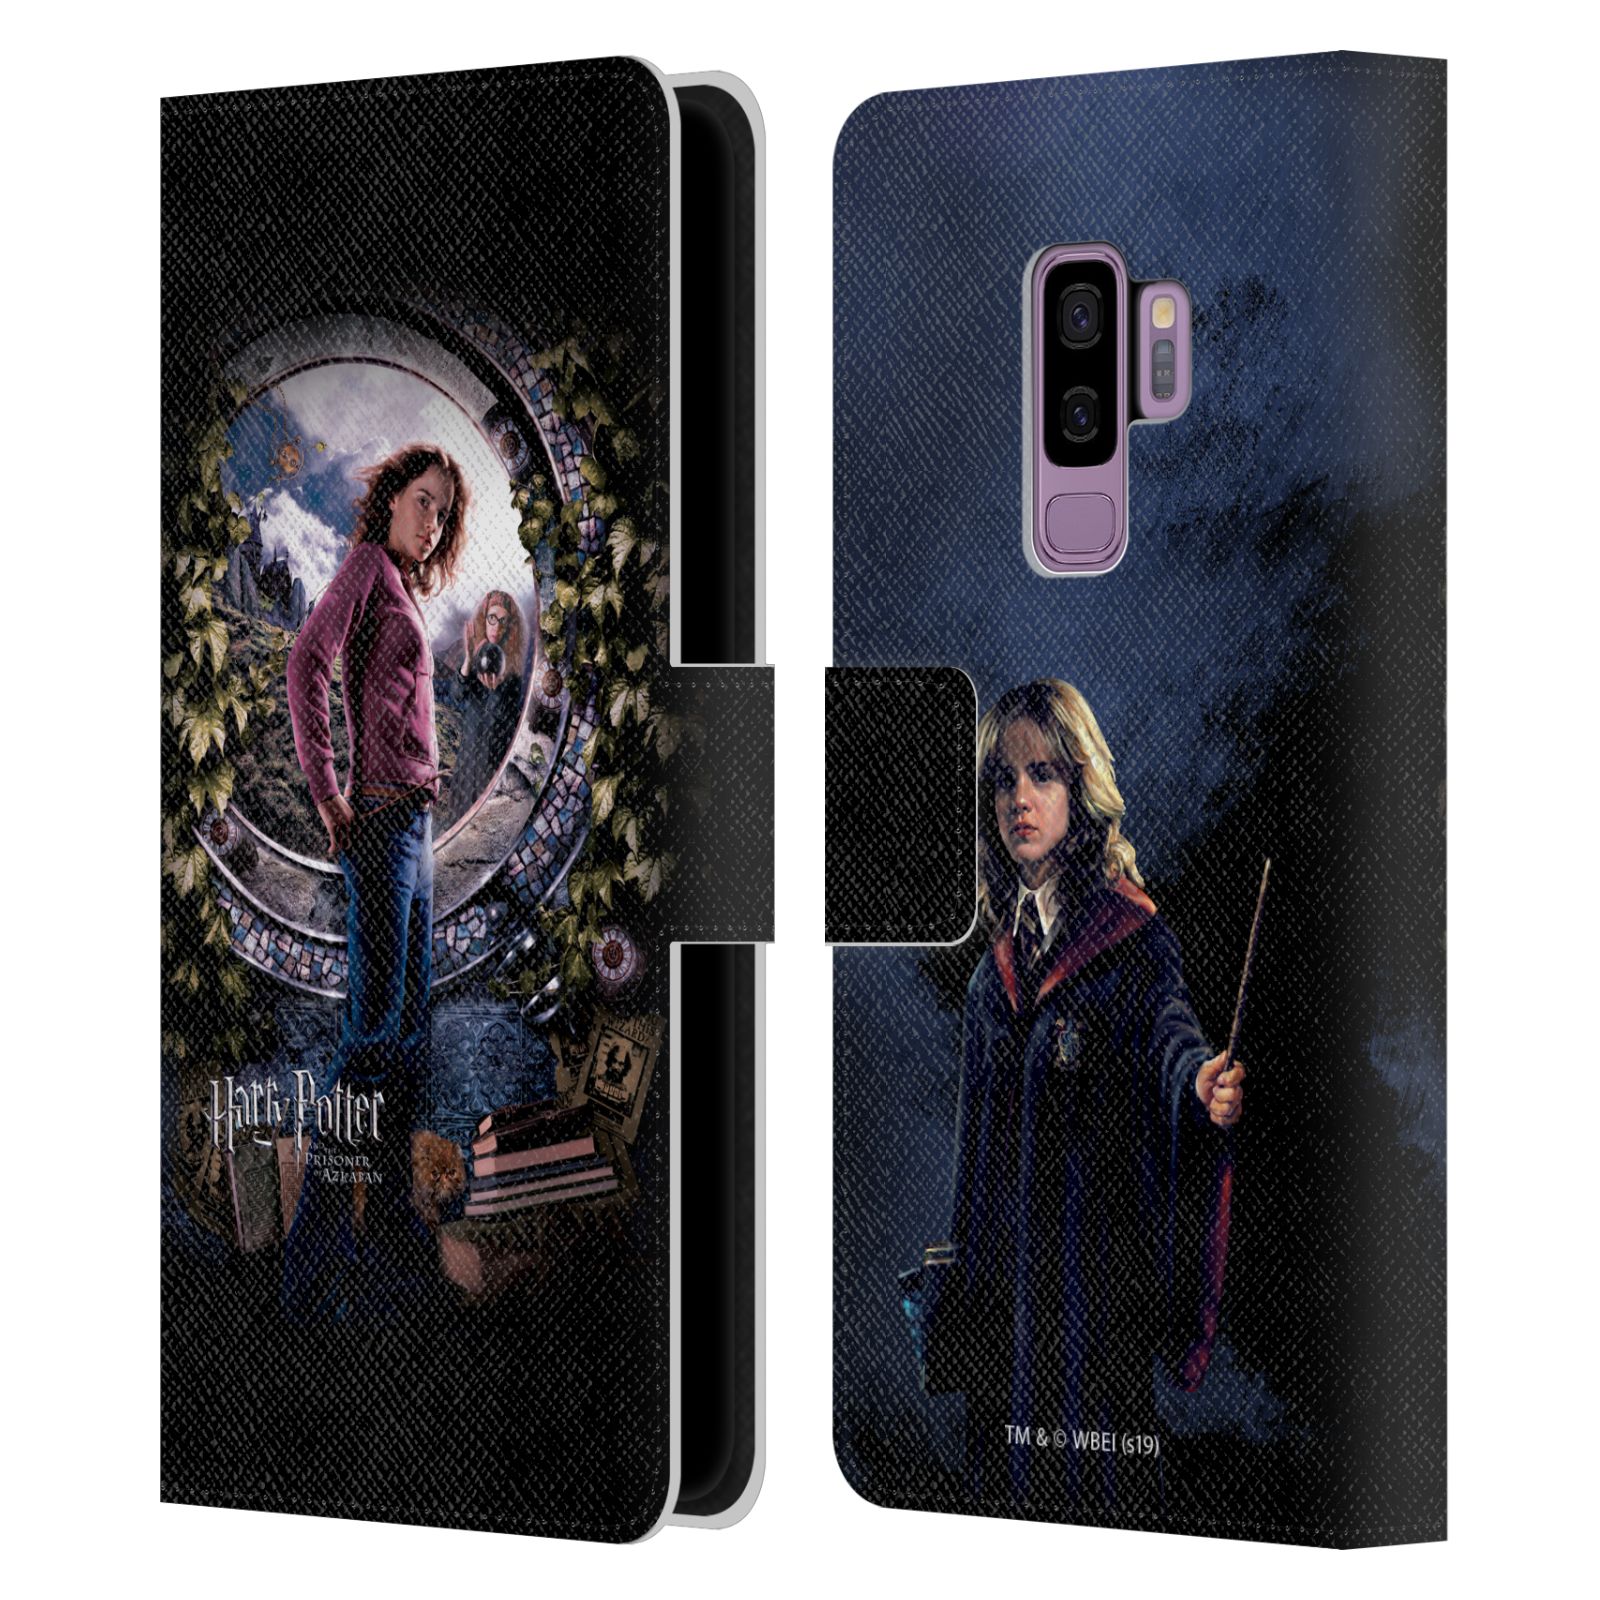 Pouzdro na mobil Samsung Galaxy S9+ / S9 PLUS - HEAD CASE - Harry Potter - Vězeň z Azkabanu - Hermiona